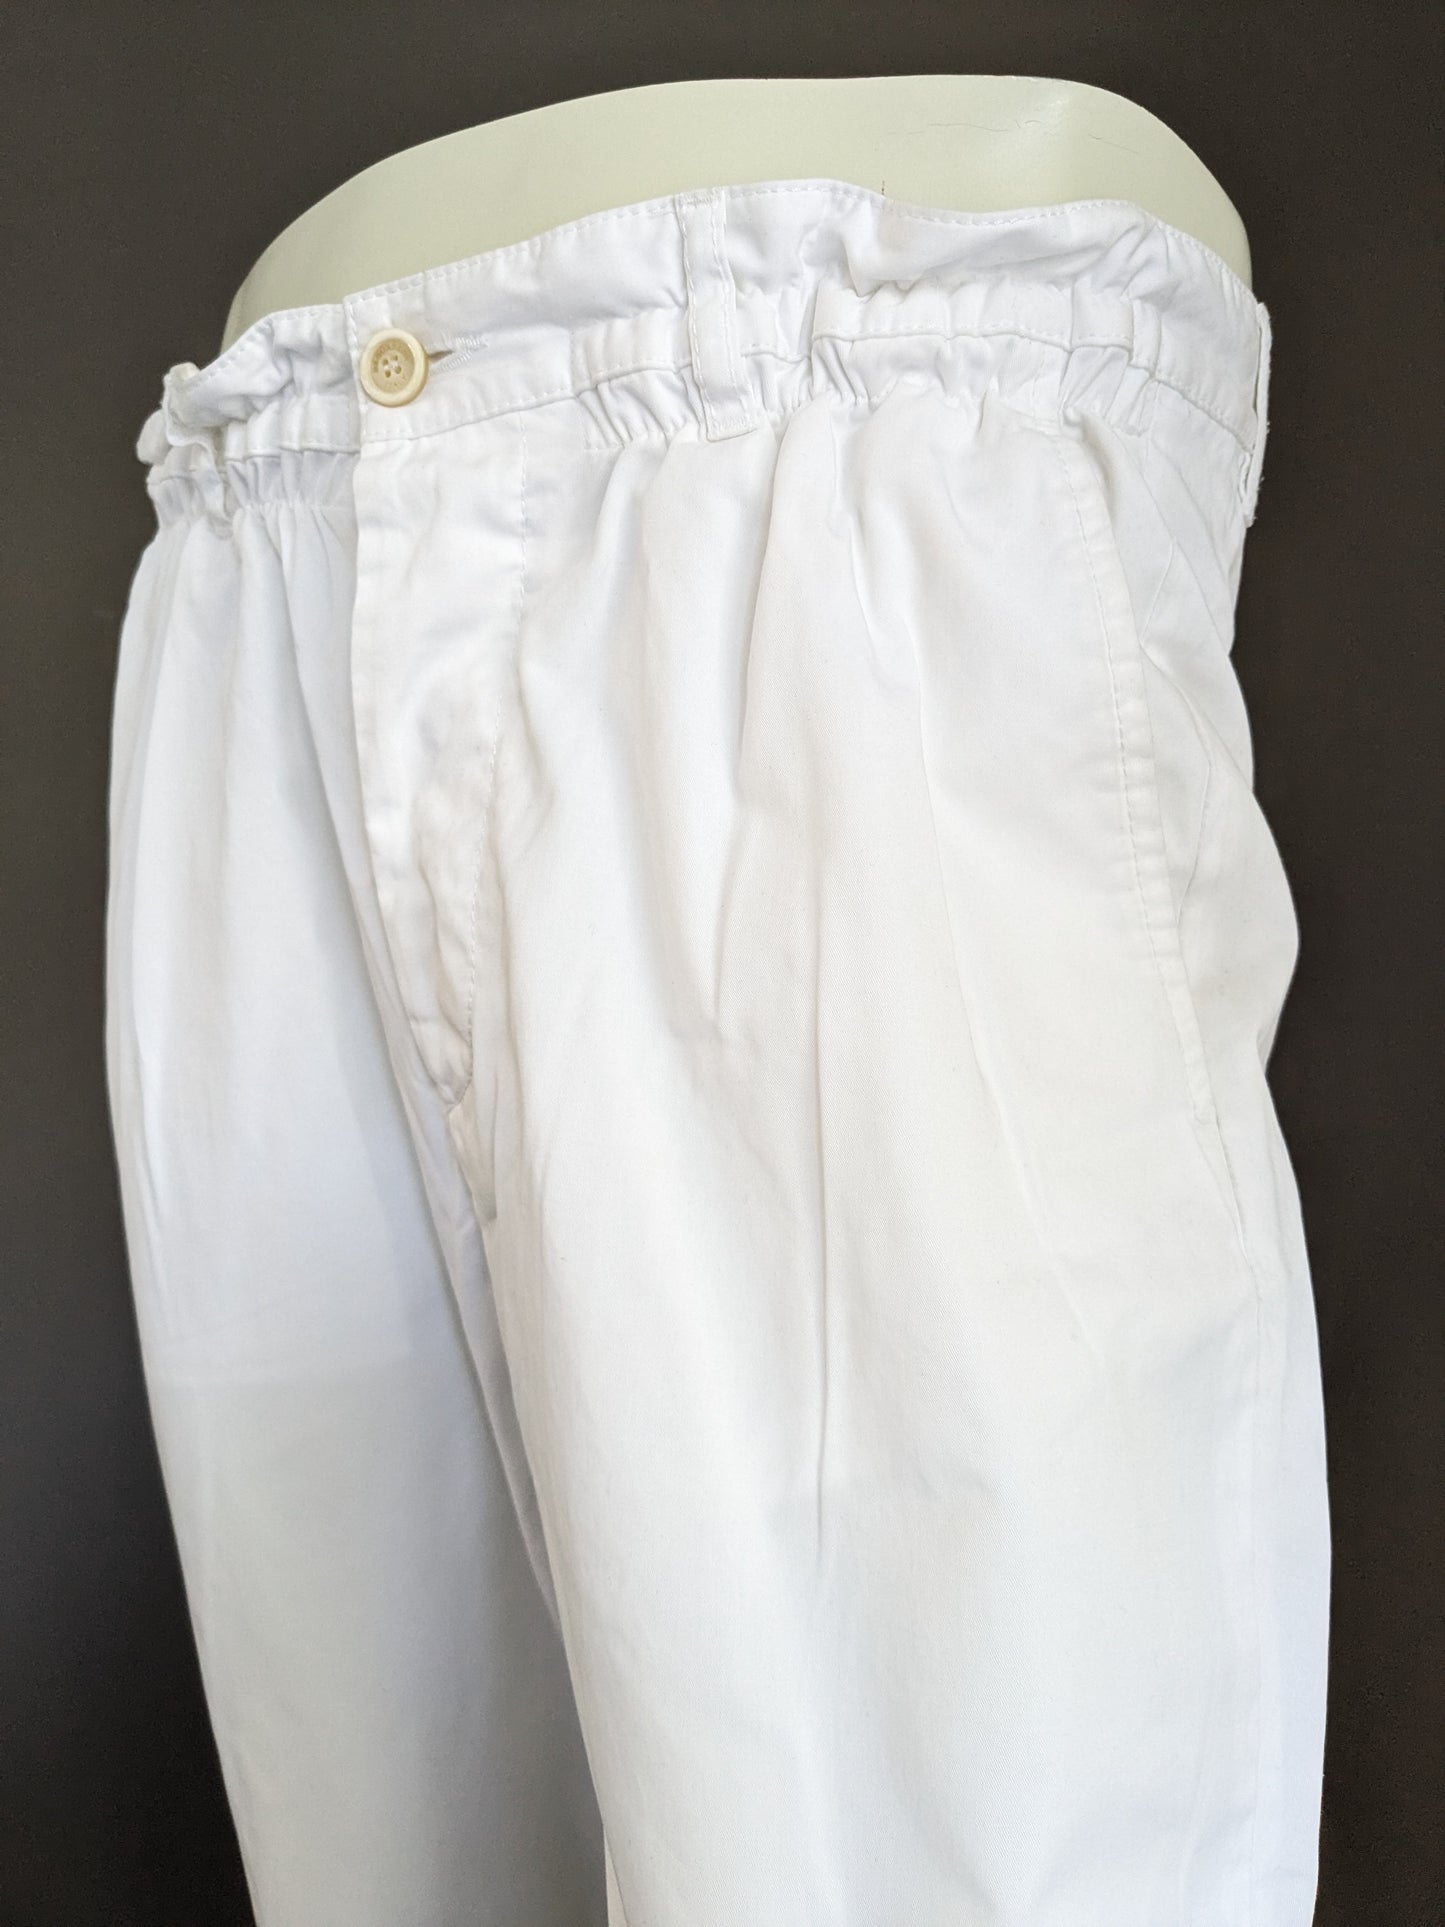 Hose von Dsquared2 mit elastischem Bund. Weiß gefärbt. Größe 48 / M.